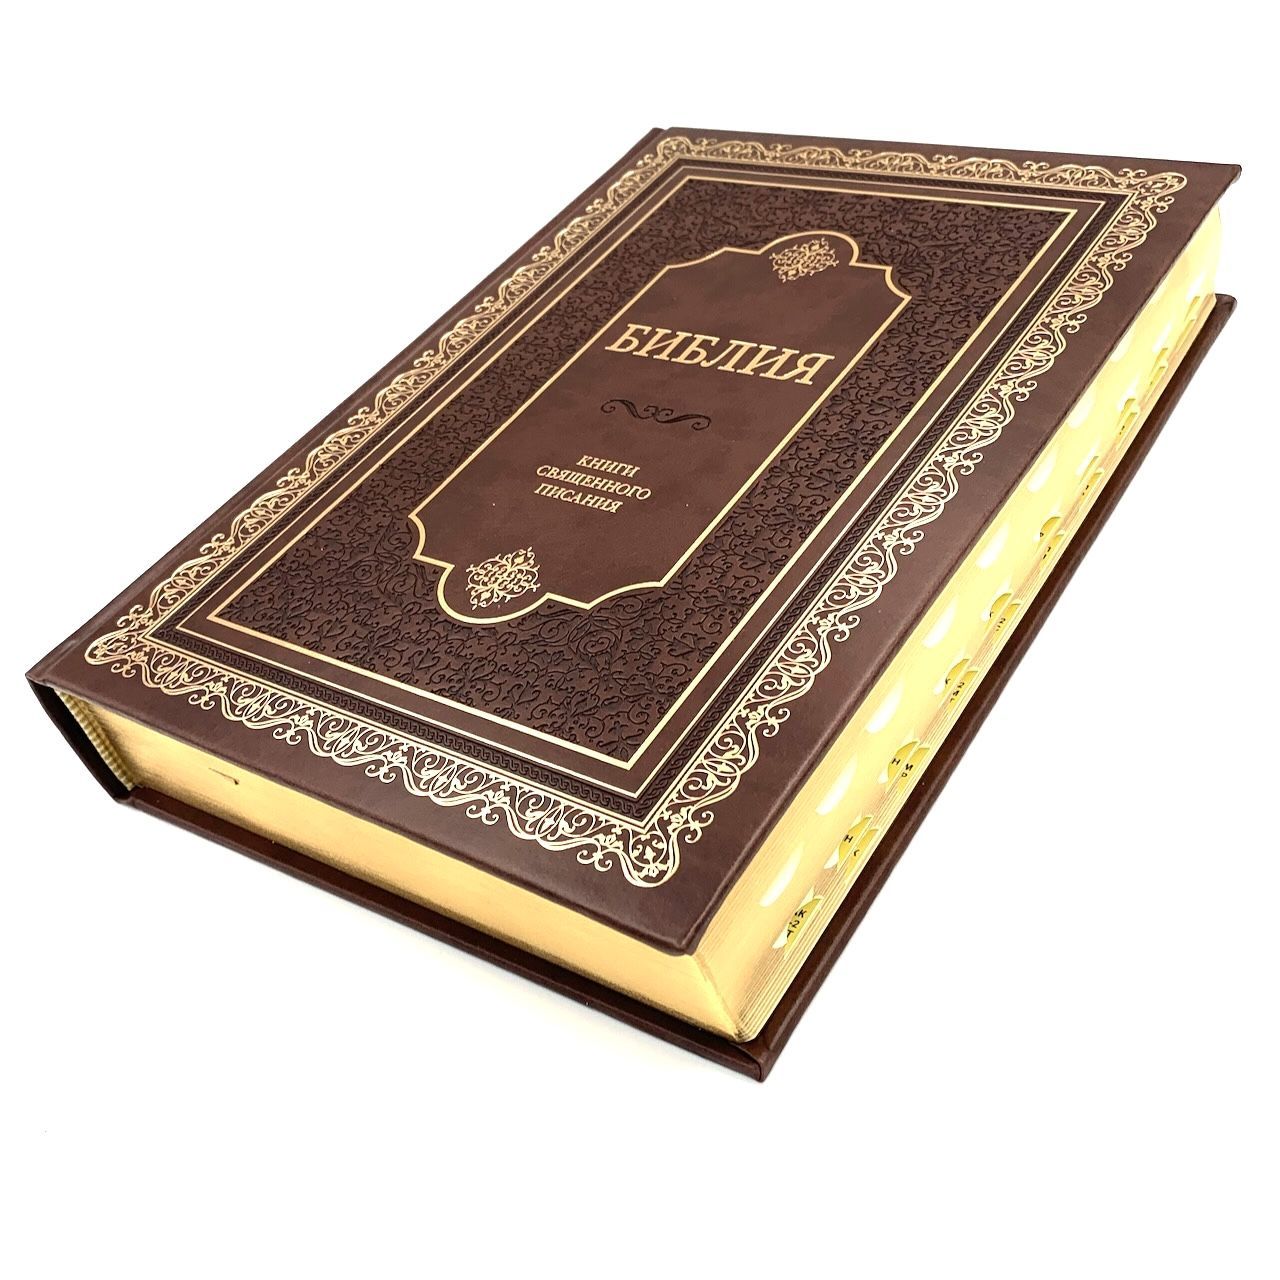 Библия 085 ti твердый переплет с декорированным оформлением и золотым тиснением в подарочном футляре, цвет коричневый, настольная, формат 310х235 мм, код 11851, очень крупный шрифт